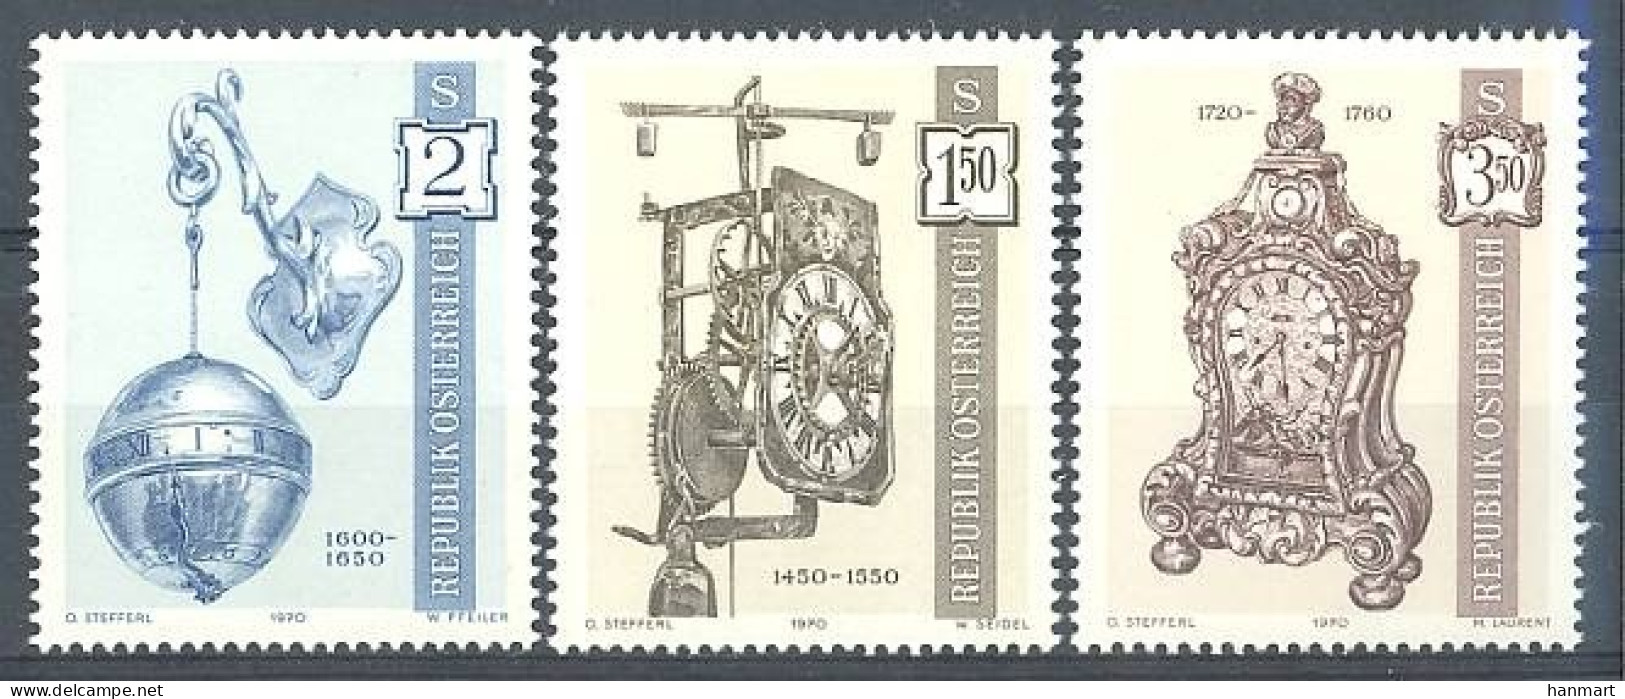 Austria 1970 Mi 1328-1330 MNH  (ZE1 AST1328-1330) - Horlogerie